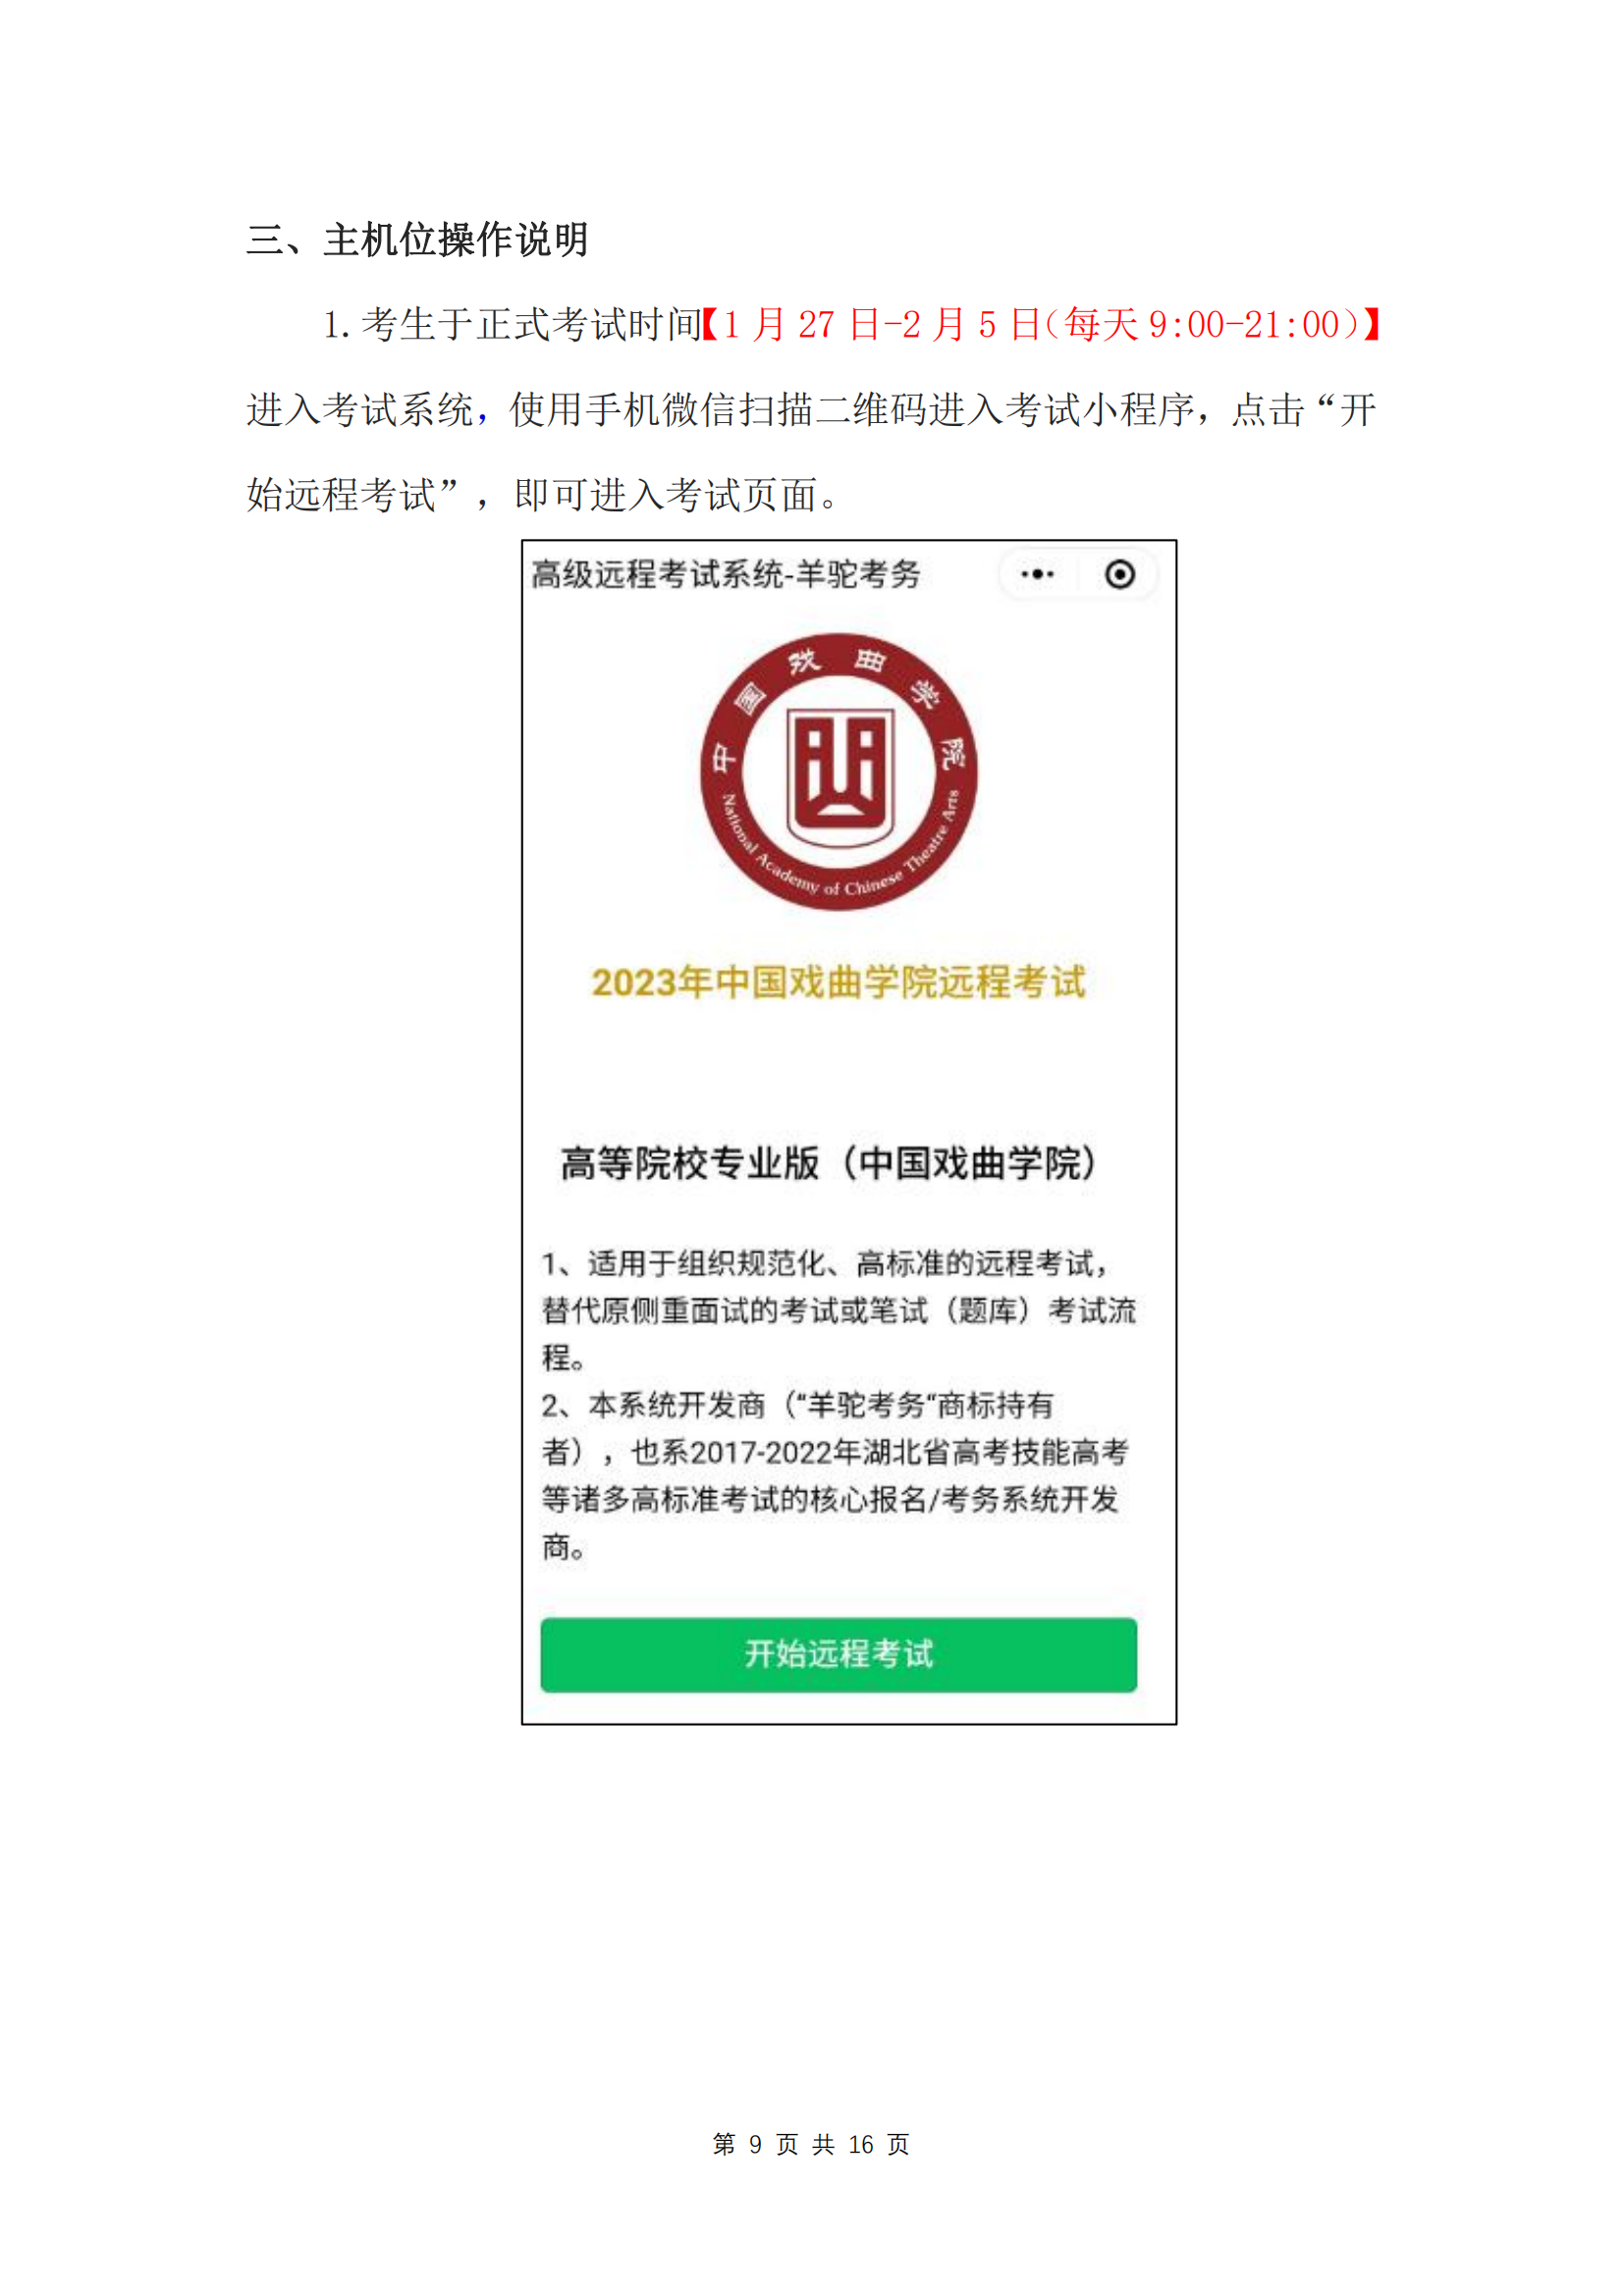 中国戏曲学院2023年本科招生线上考试(提交视频) 操作指南_08.png